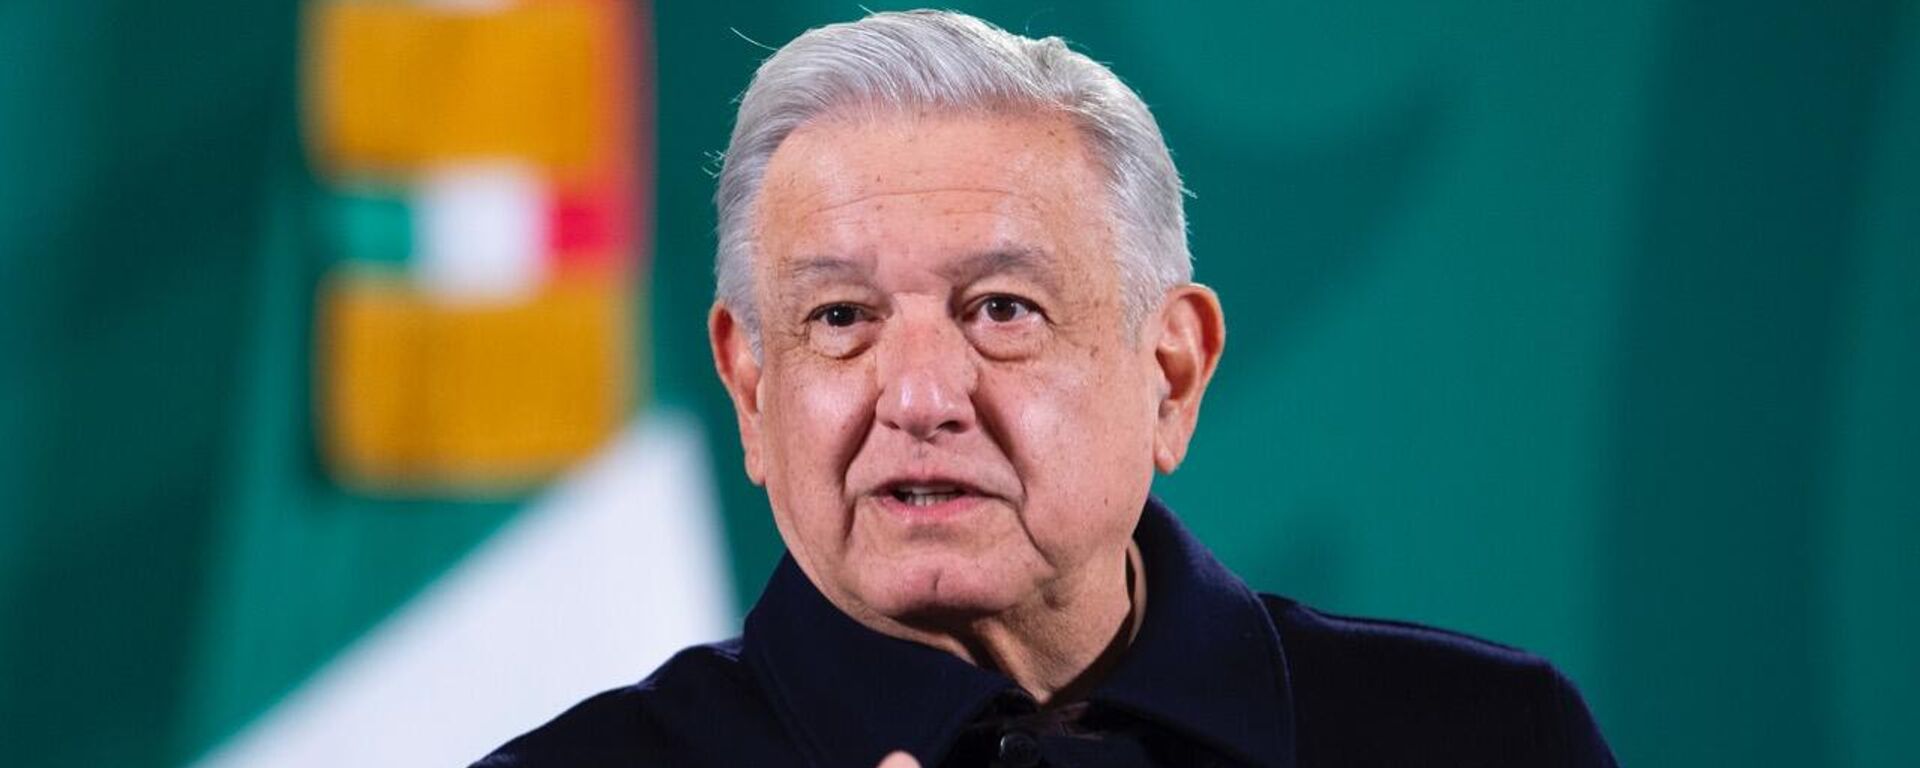 Andrés Manuel López Obrador, presidente de México. - Sputnik Mundo, 1920, 22.11.2021